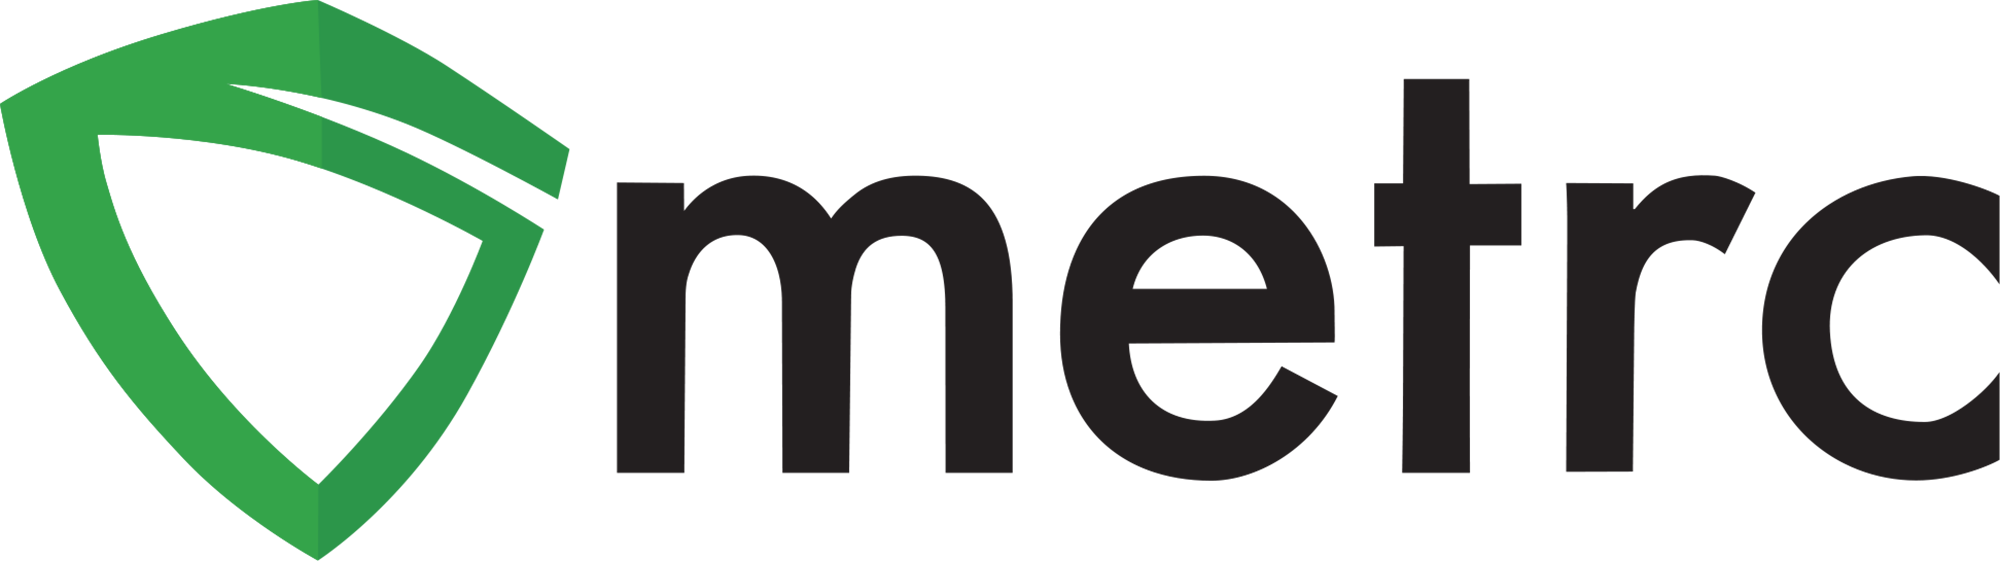 Metrc Announces New 